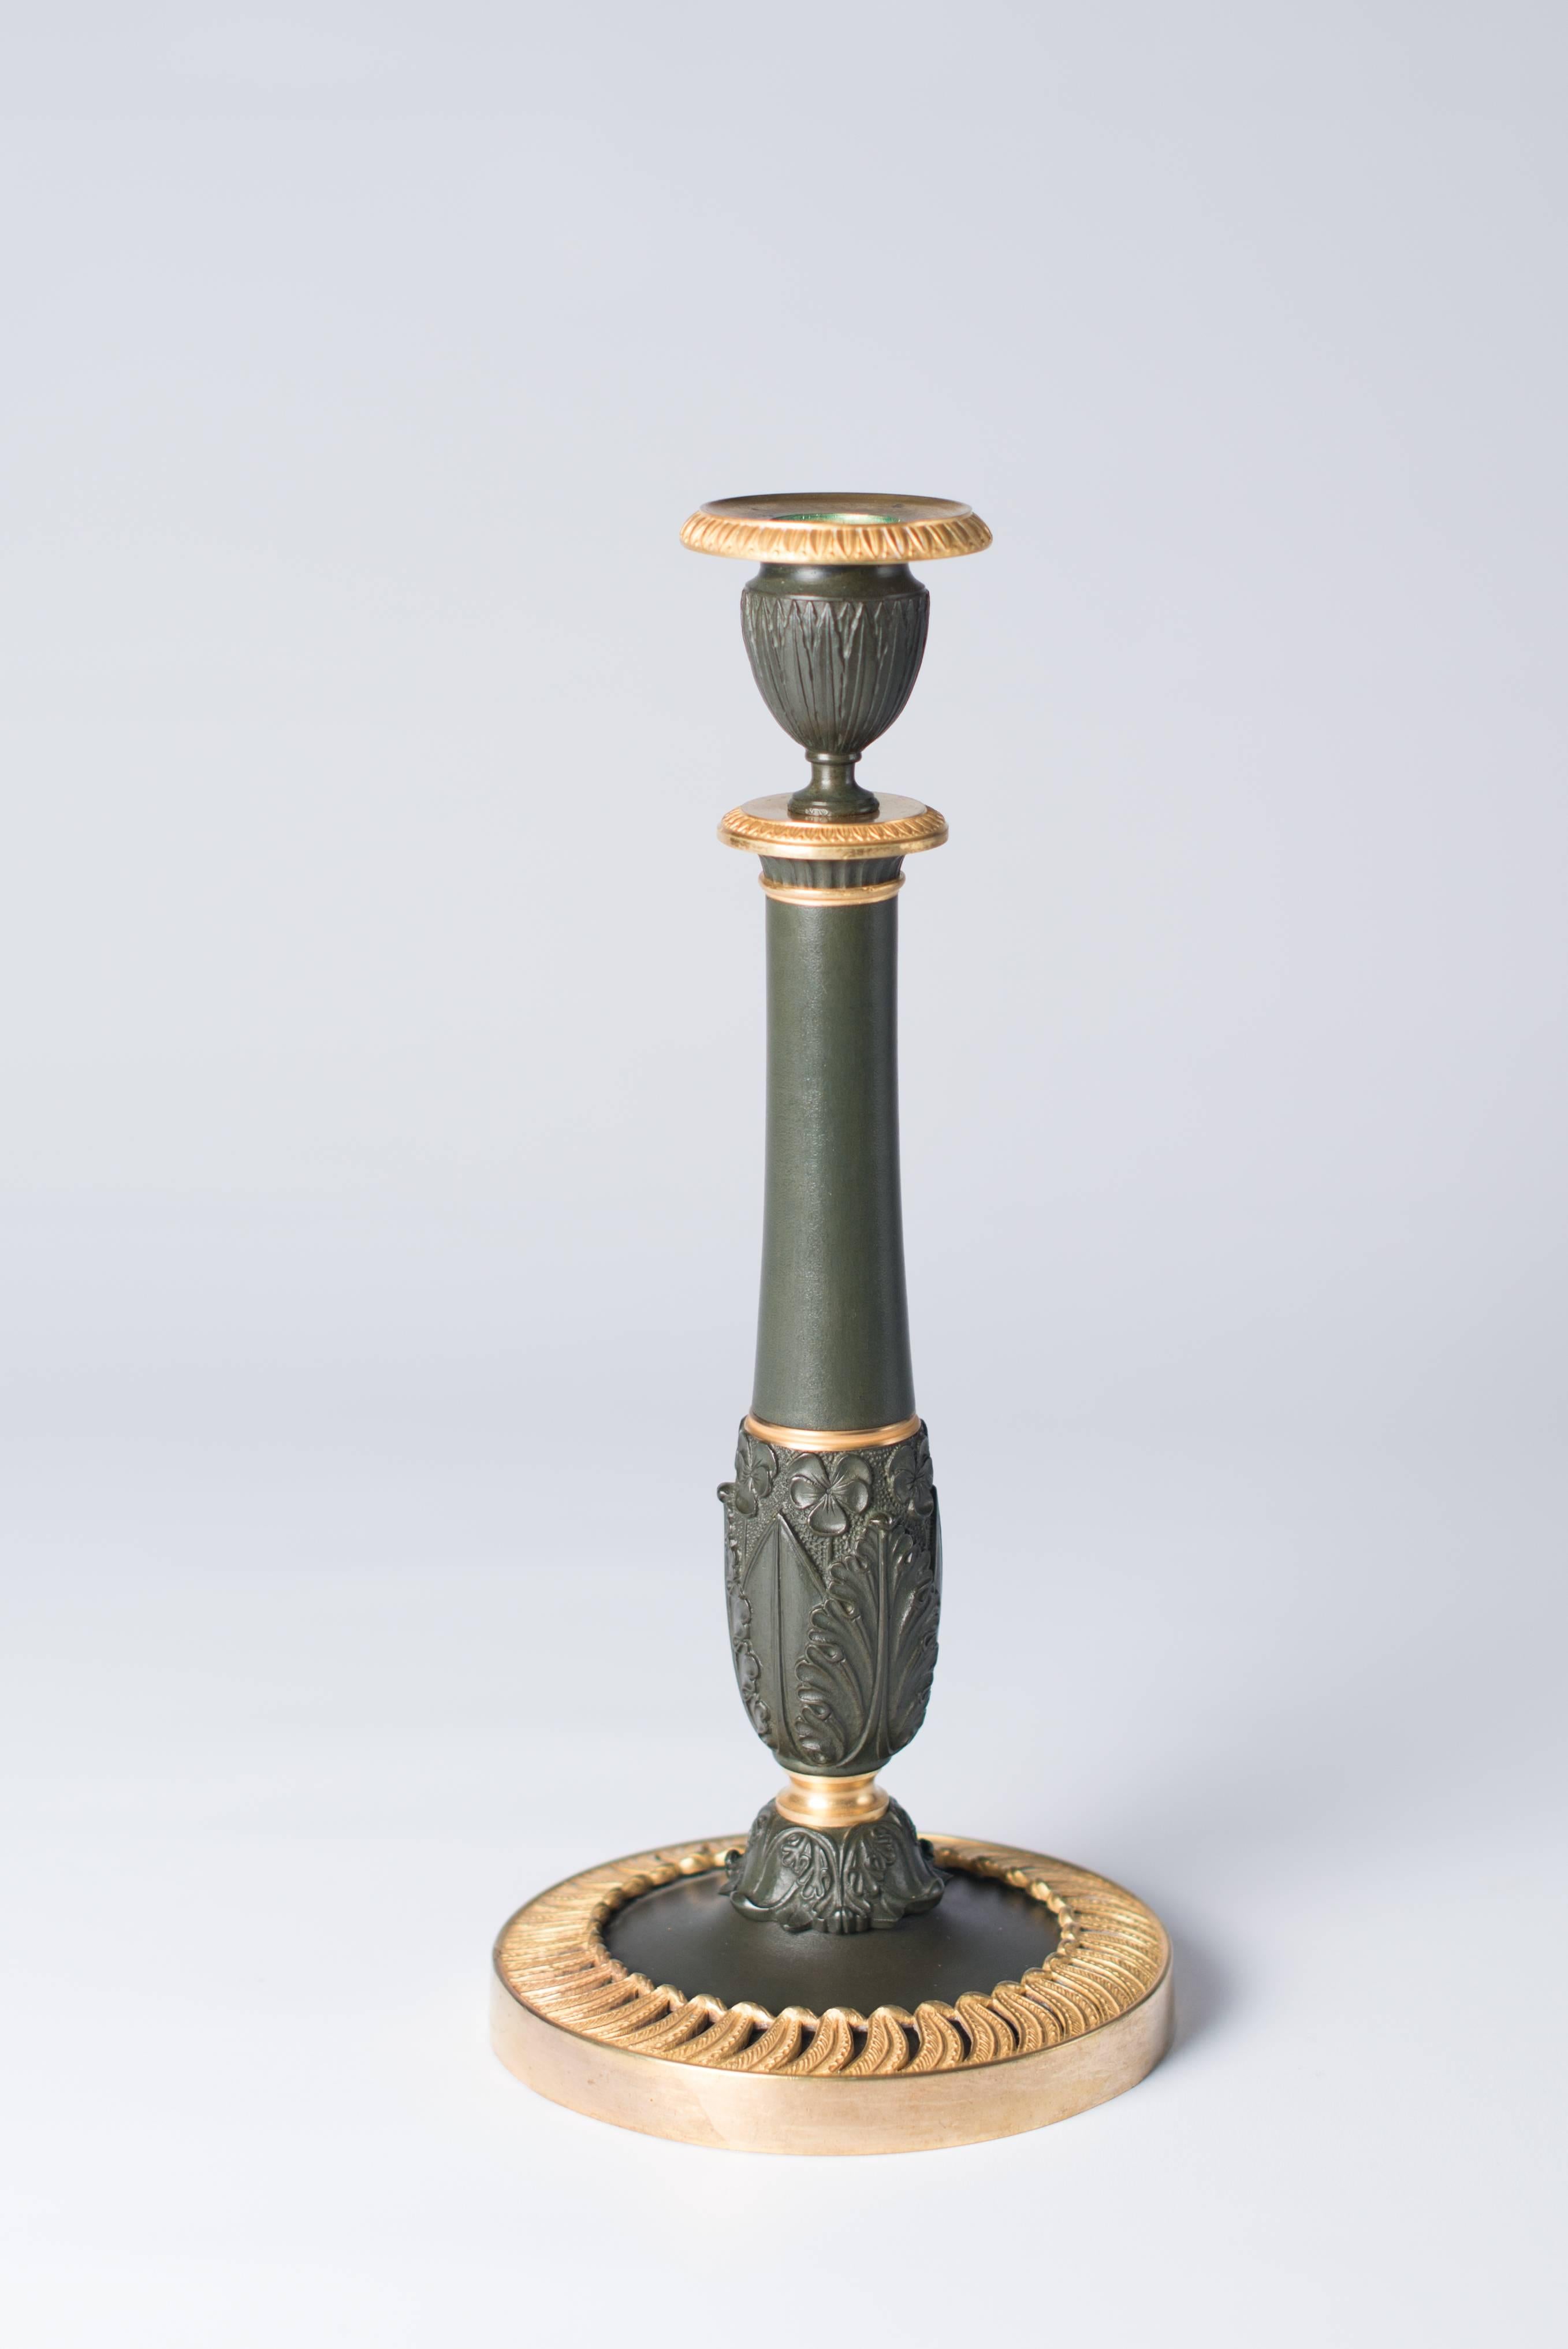 Cast Candlesticks Antique Gilded Bronze, France, 1830 For Sale